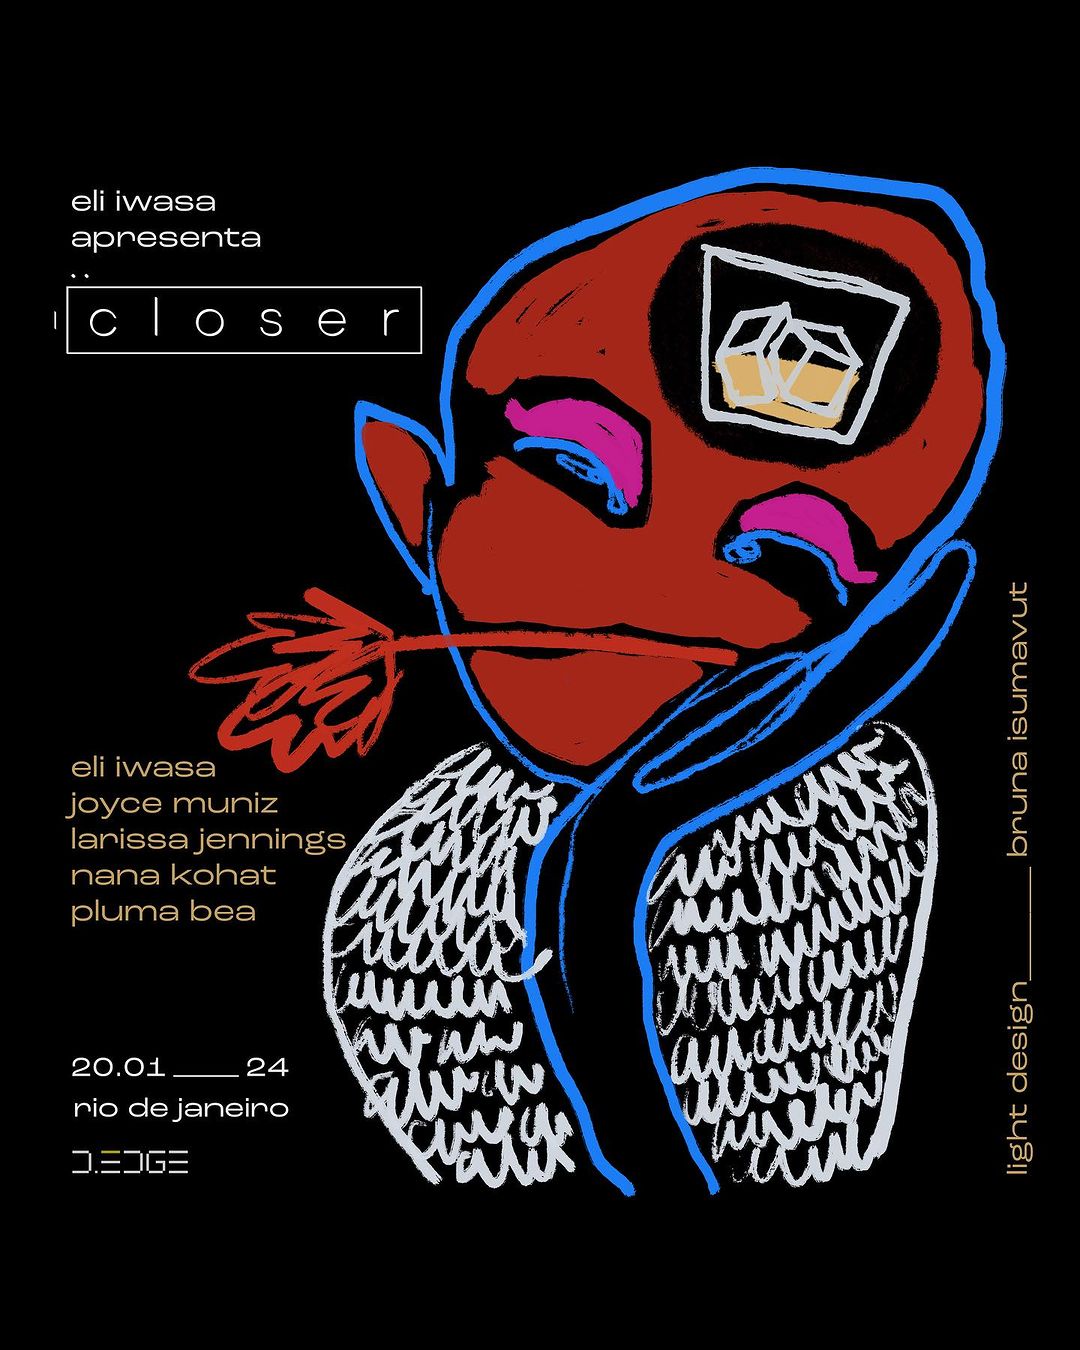 Closer by Eli Iwasa | RJ